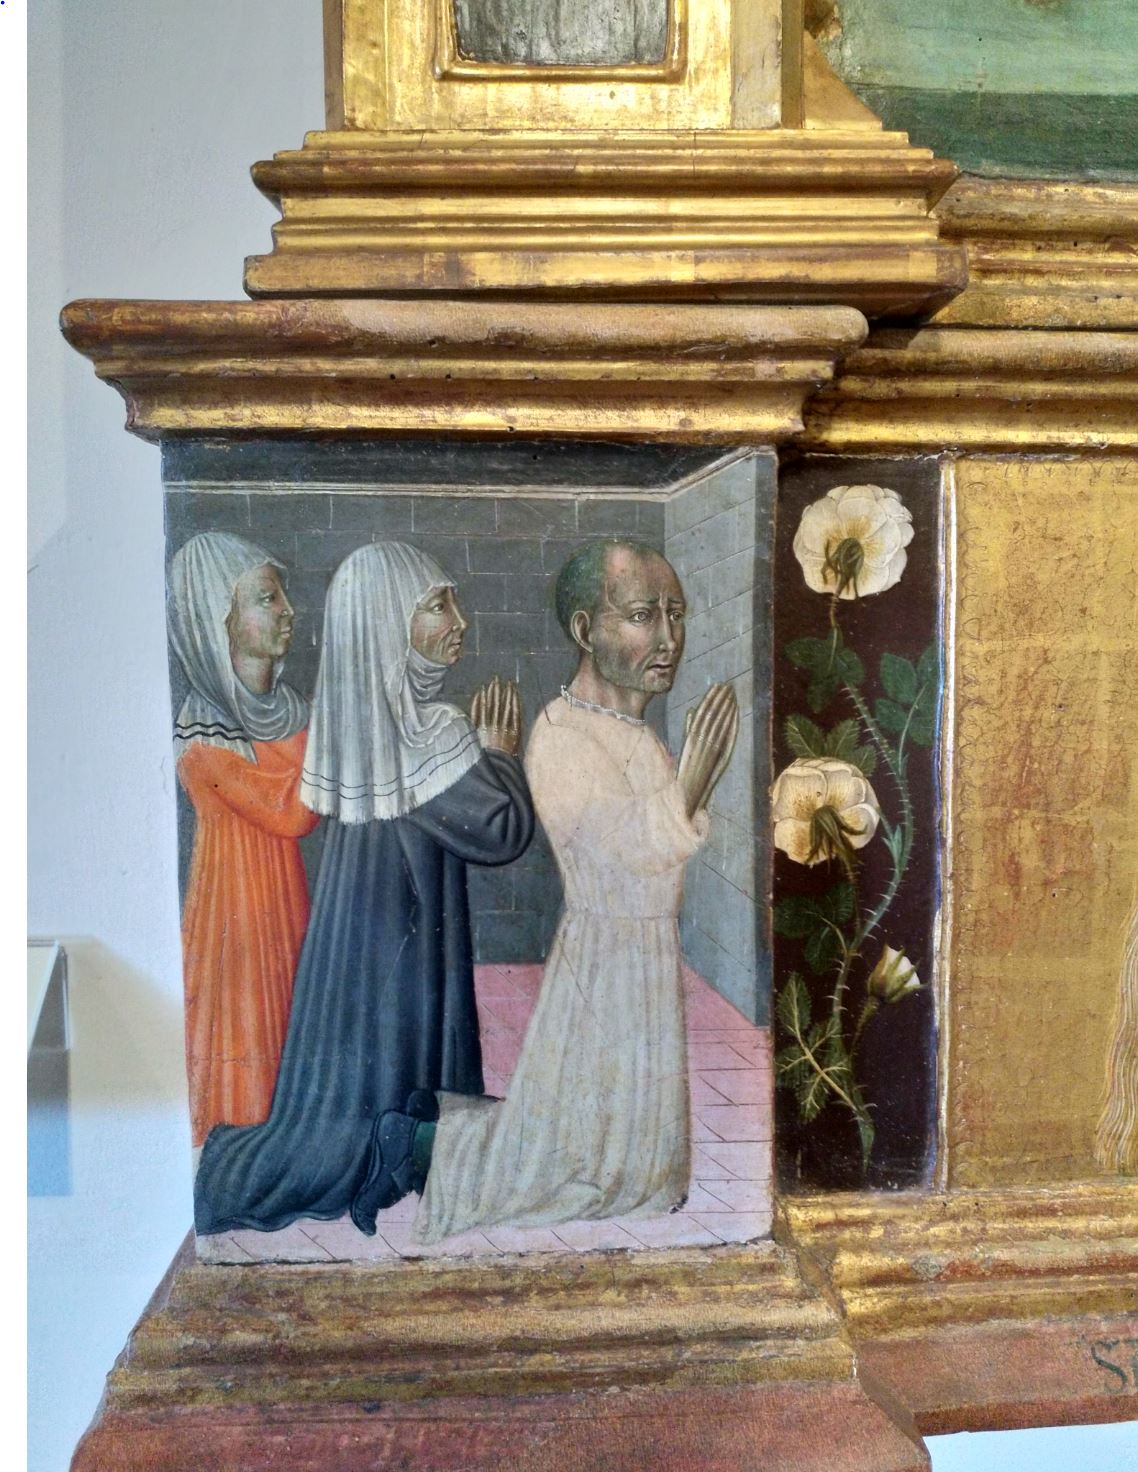 1475 Giovanni di Paolo Pala di staggia Pinacoteca Nazionale Sienne detail